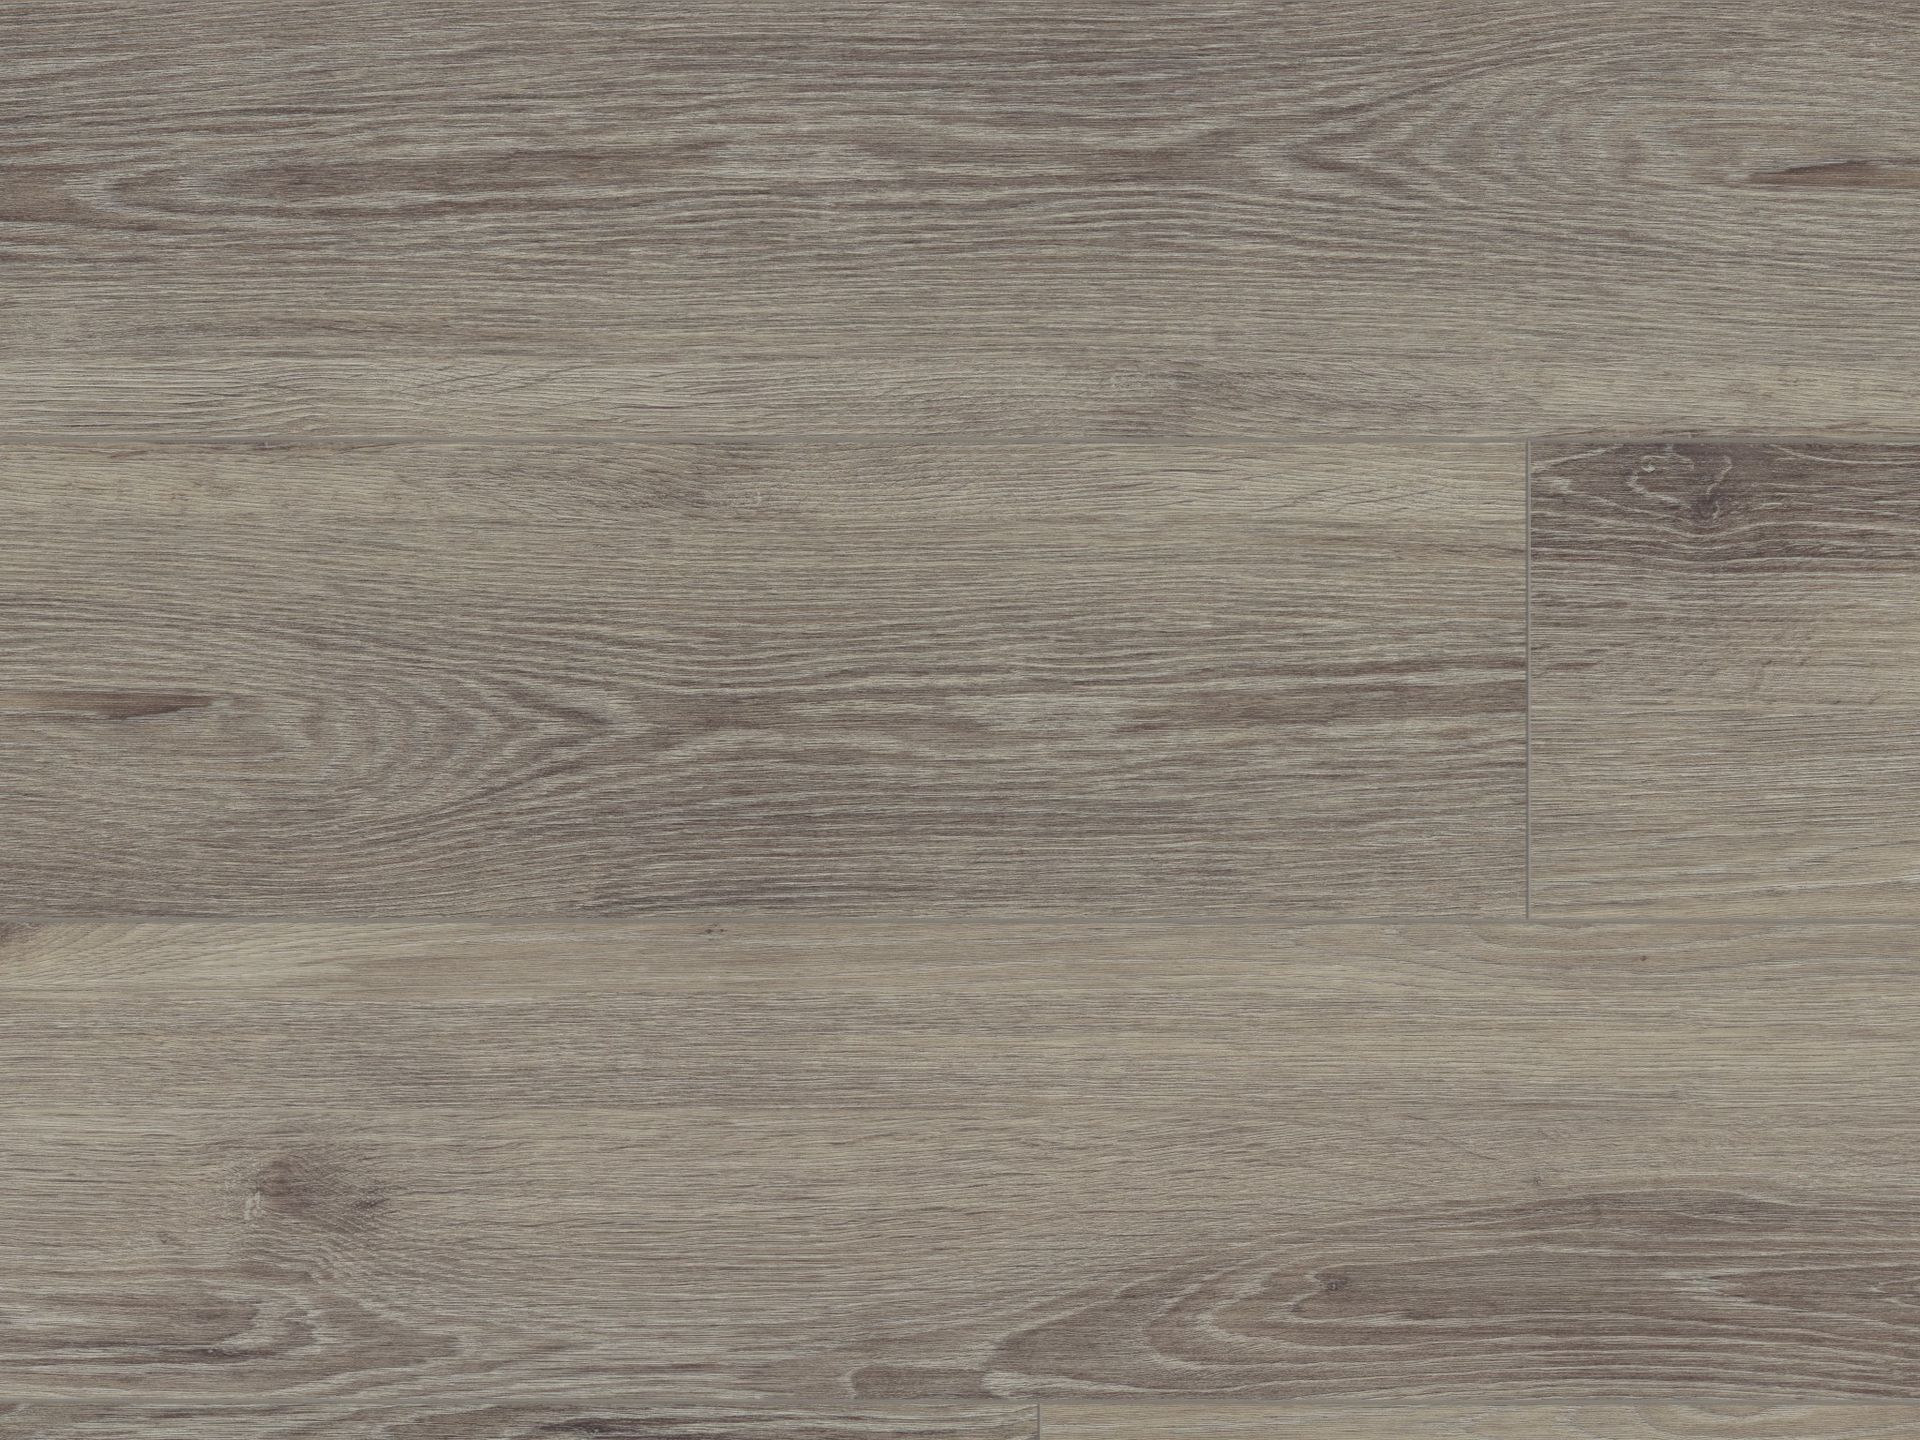 Lignum Core Rustic Grey Oak flooring close up